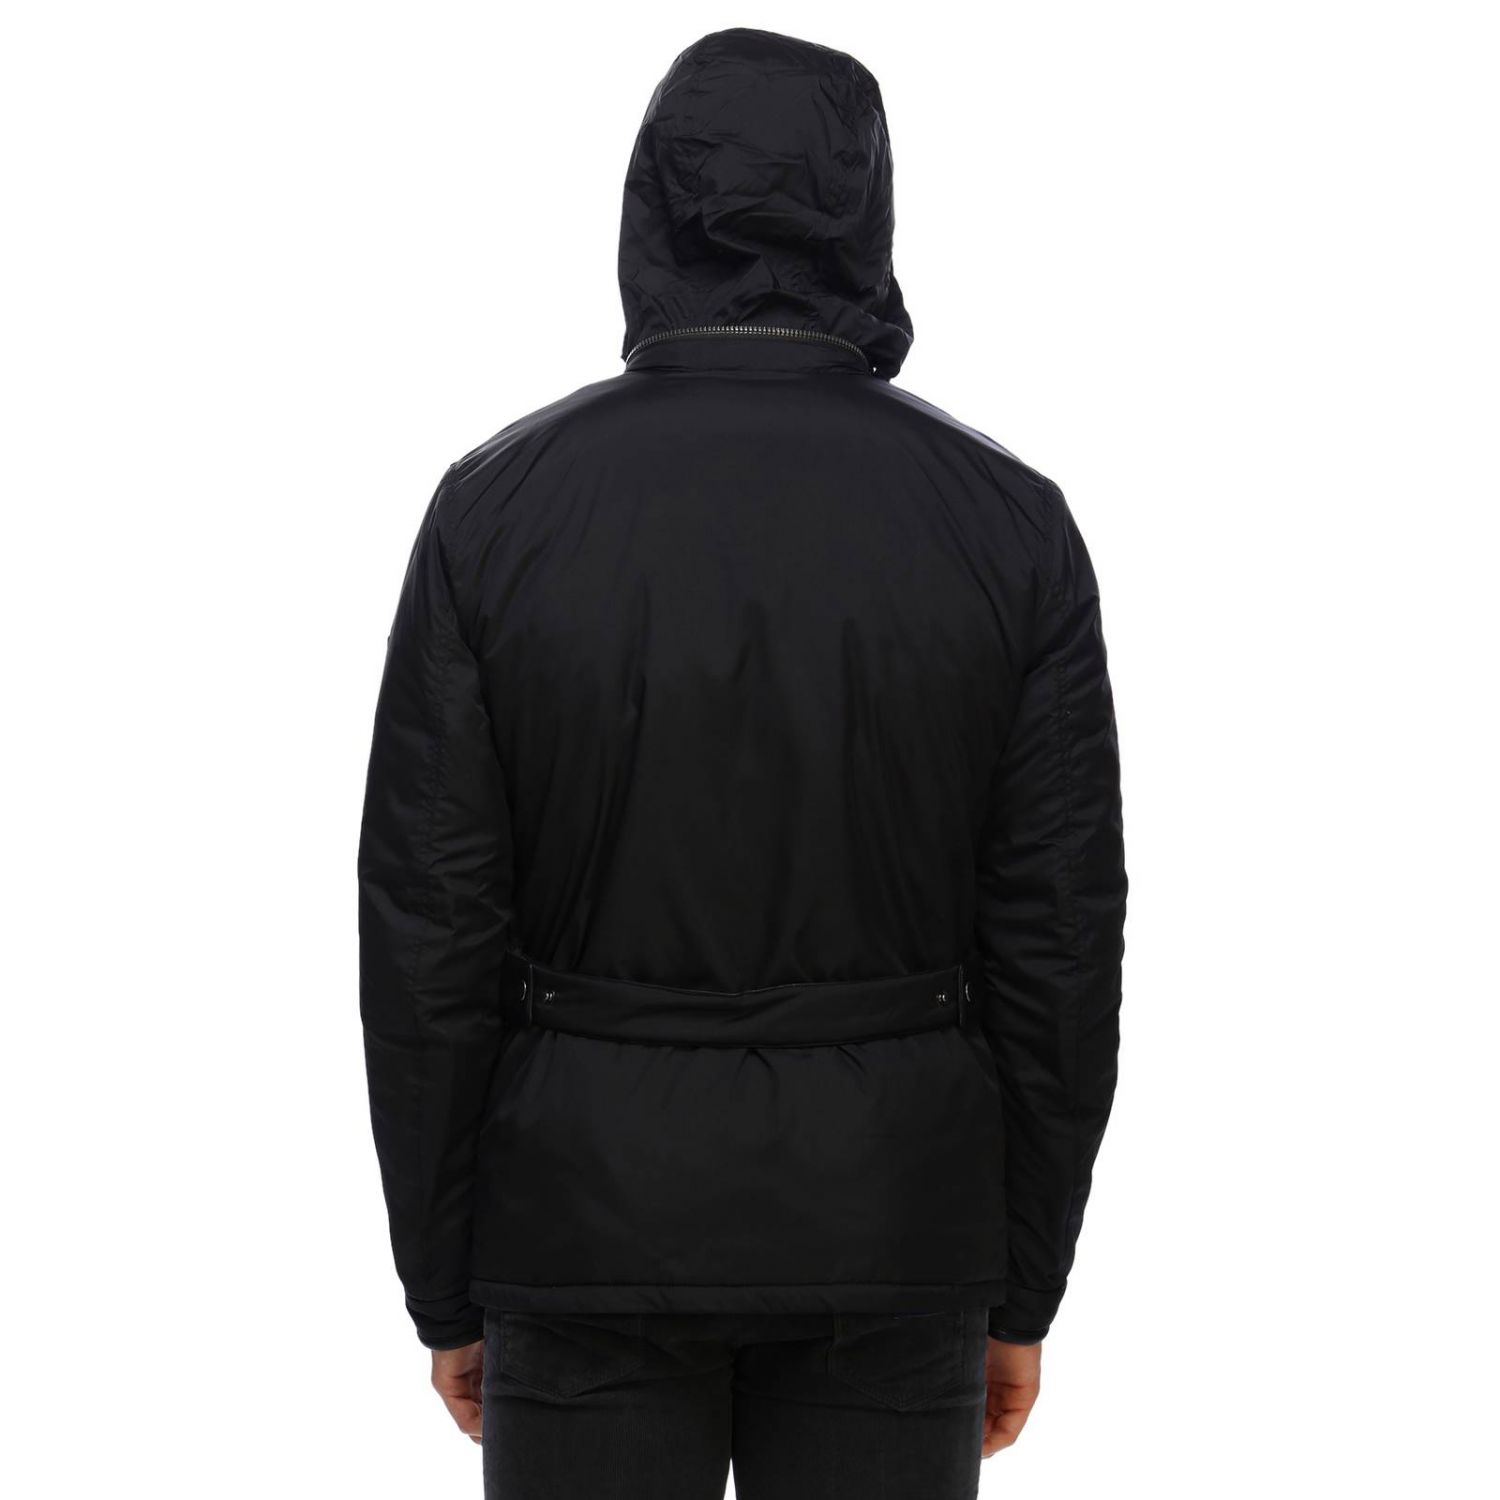 Matchless Outlet: Jacket men - Black | Jacket Matchless 110066 14028 ...